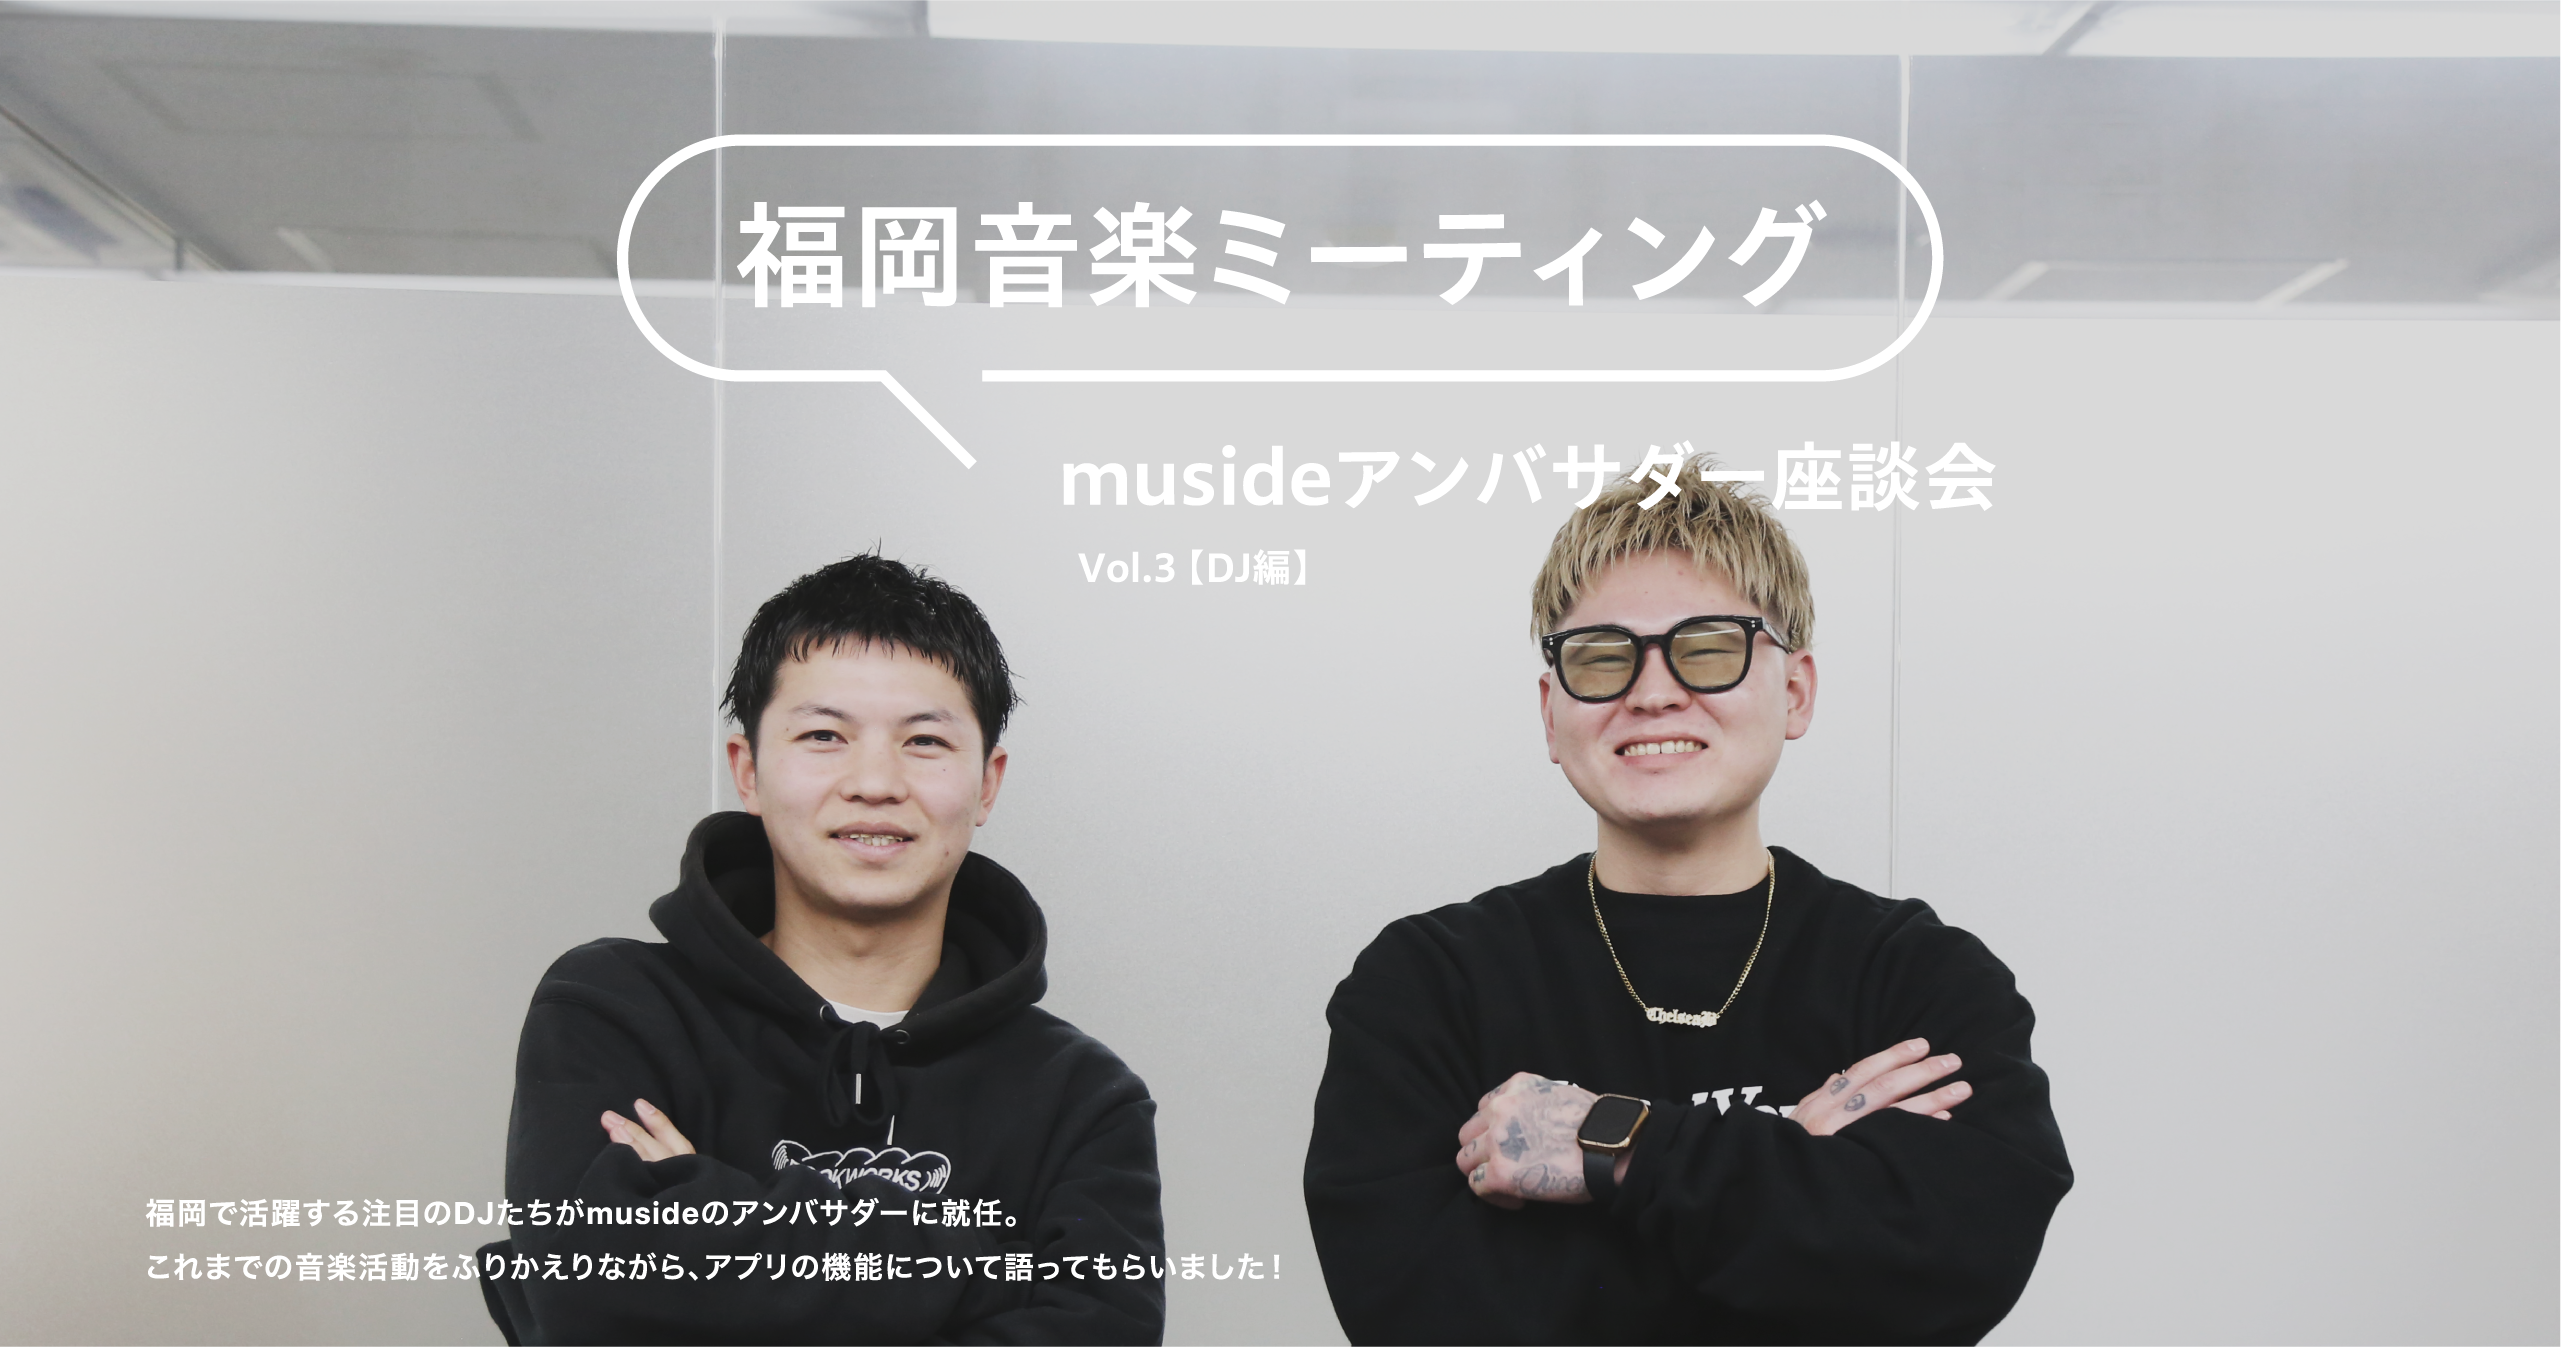 福岡音楽ミーティング musideアンバサダー座談会 vol.3【DJ編】